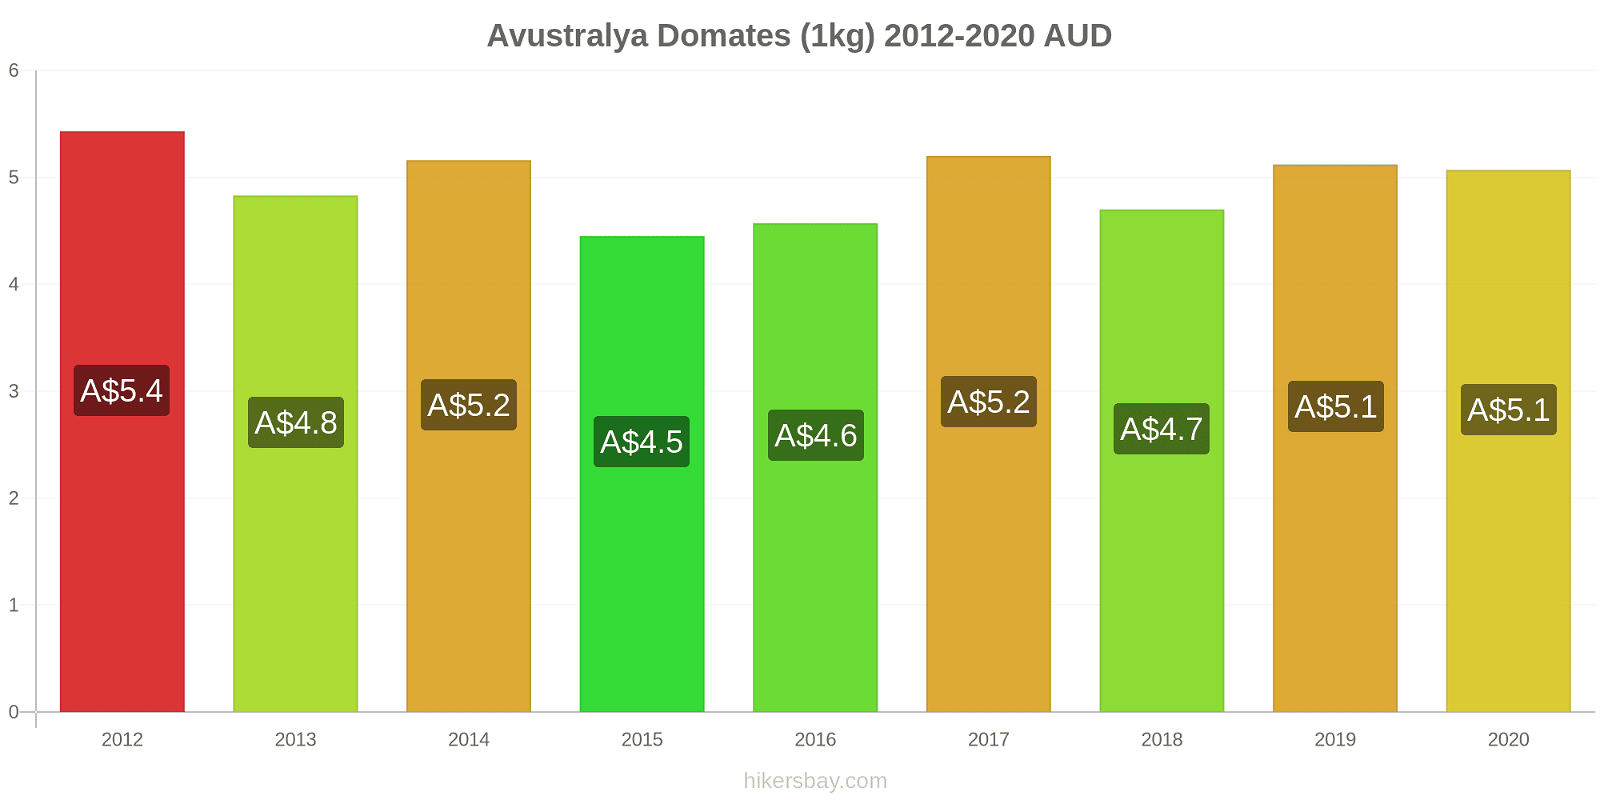 Avustralya fiyat değişiklikleri Domates (1kg) hikersbay.com